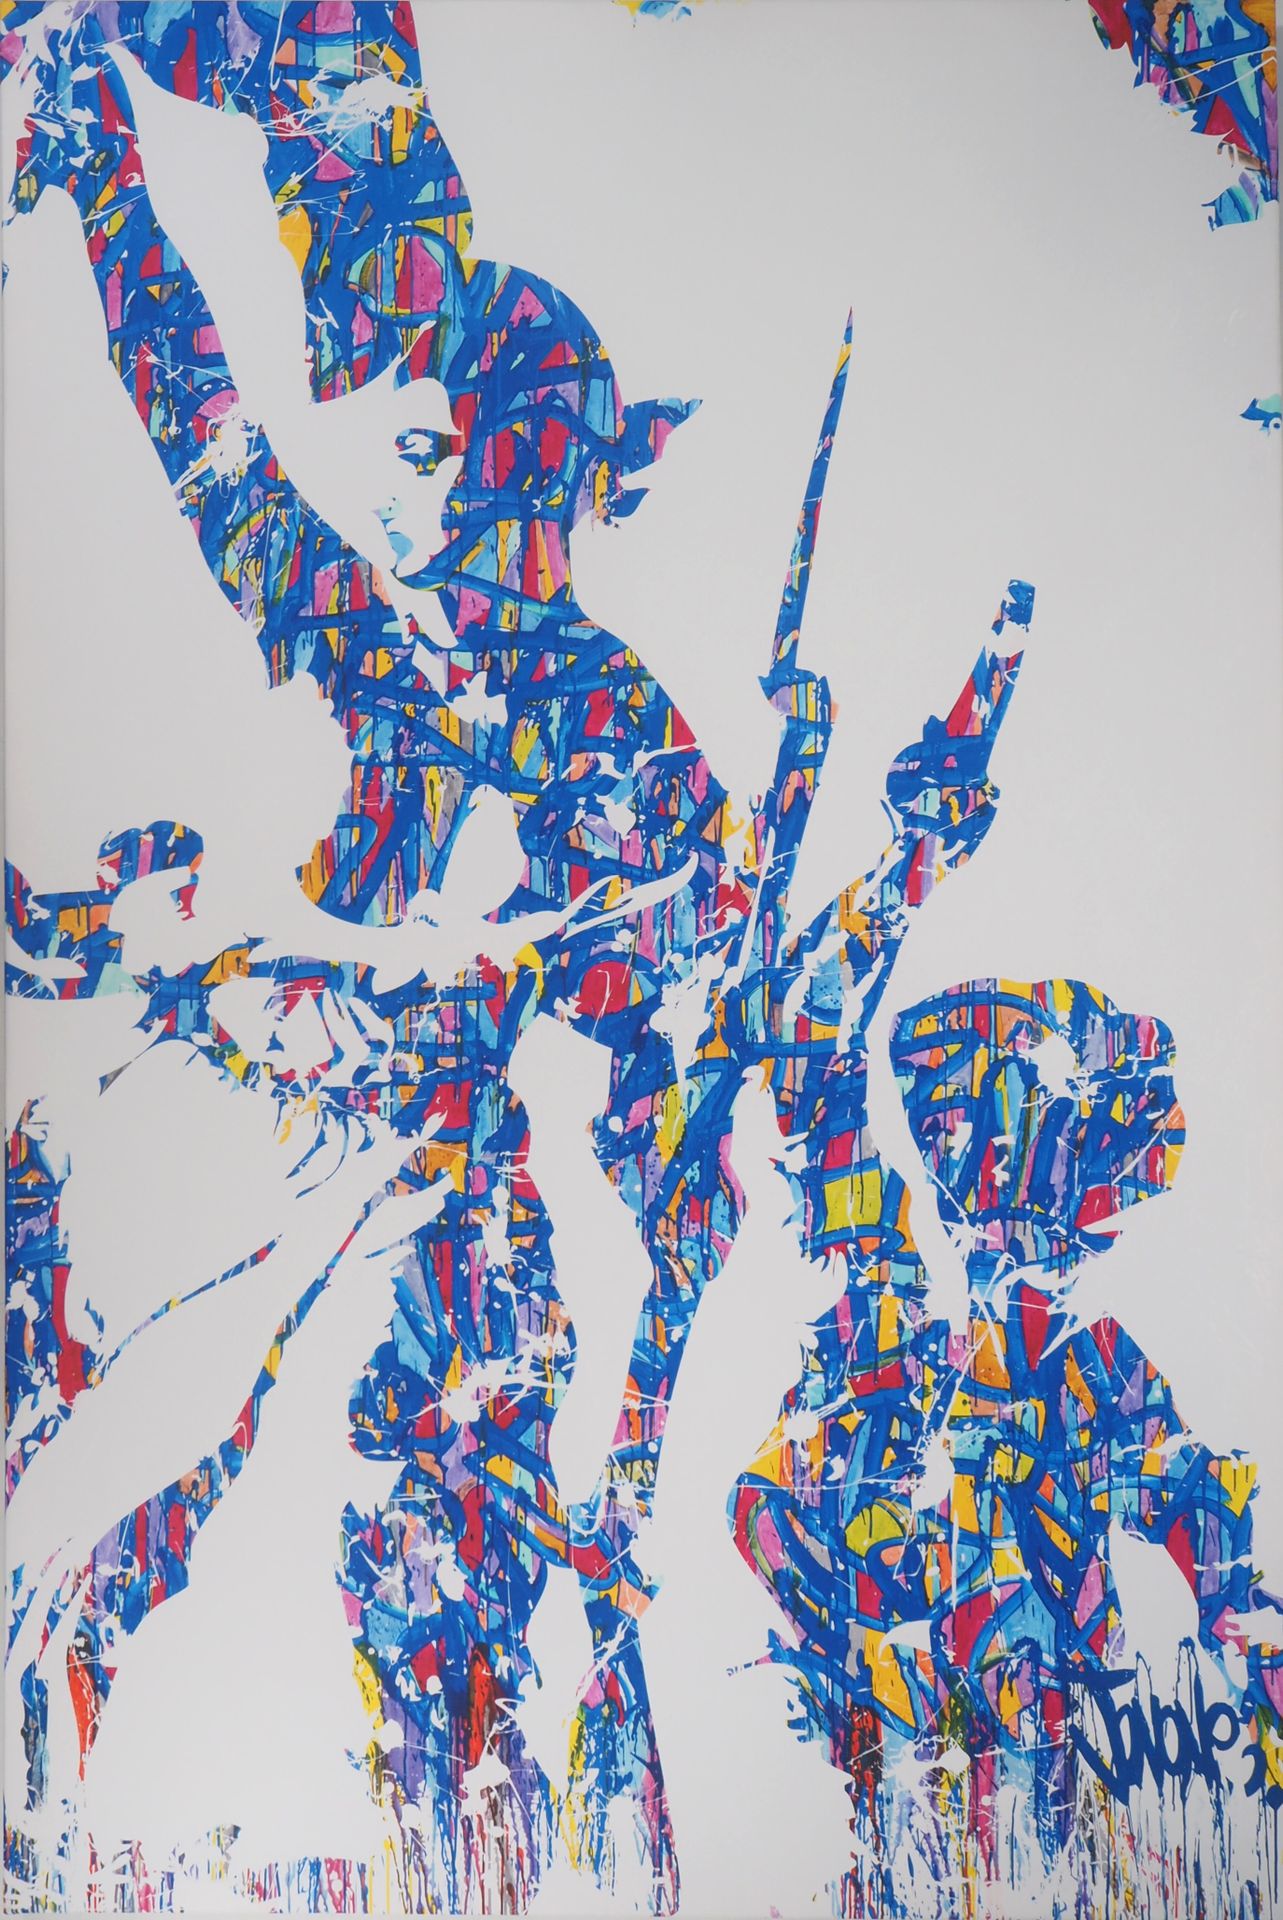 JONONE JonOne

Liberté, Egalité, Fraternité, 2015

Screen Print on canvas

Signe&hellip;